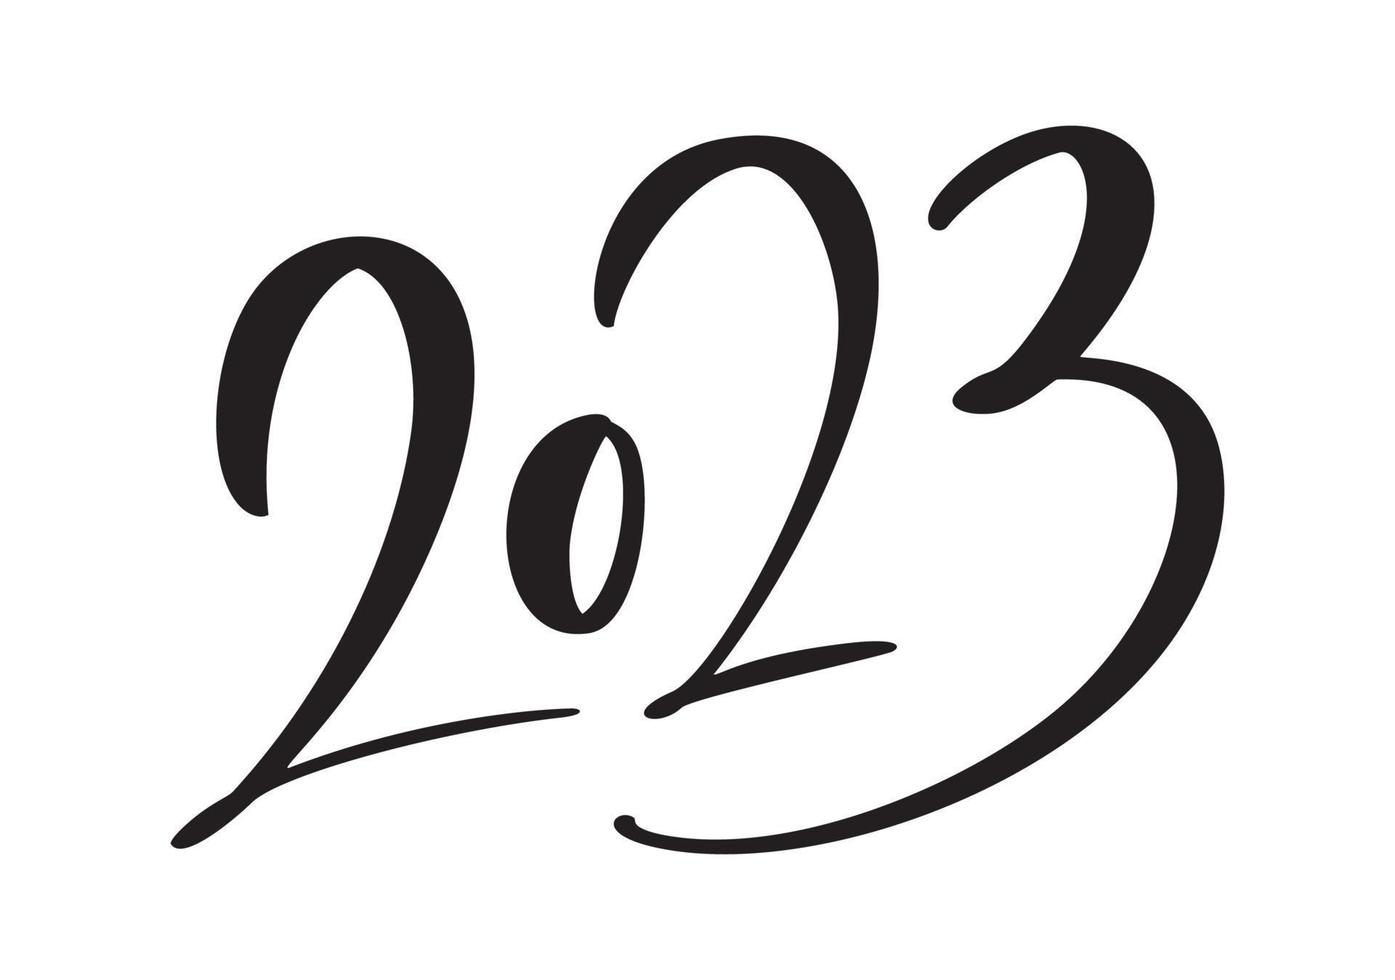 felice anno nuovo 2023 disegno di testo vettoriale. copertina del diario aziendale per modello di progettazione, illustrazione del banner della carta isolata su sfondo bianco vettore